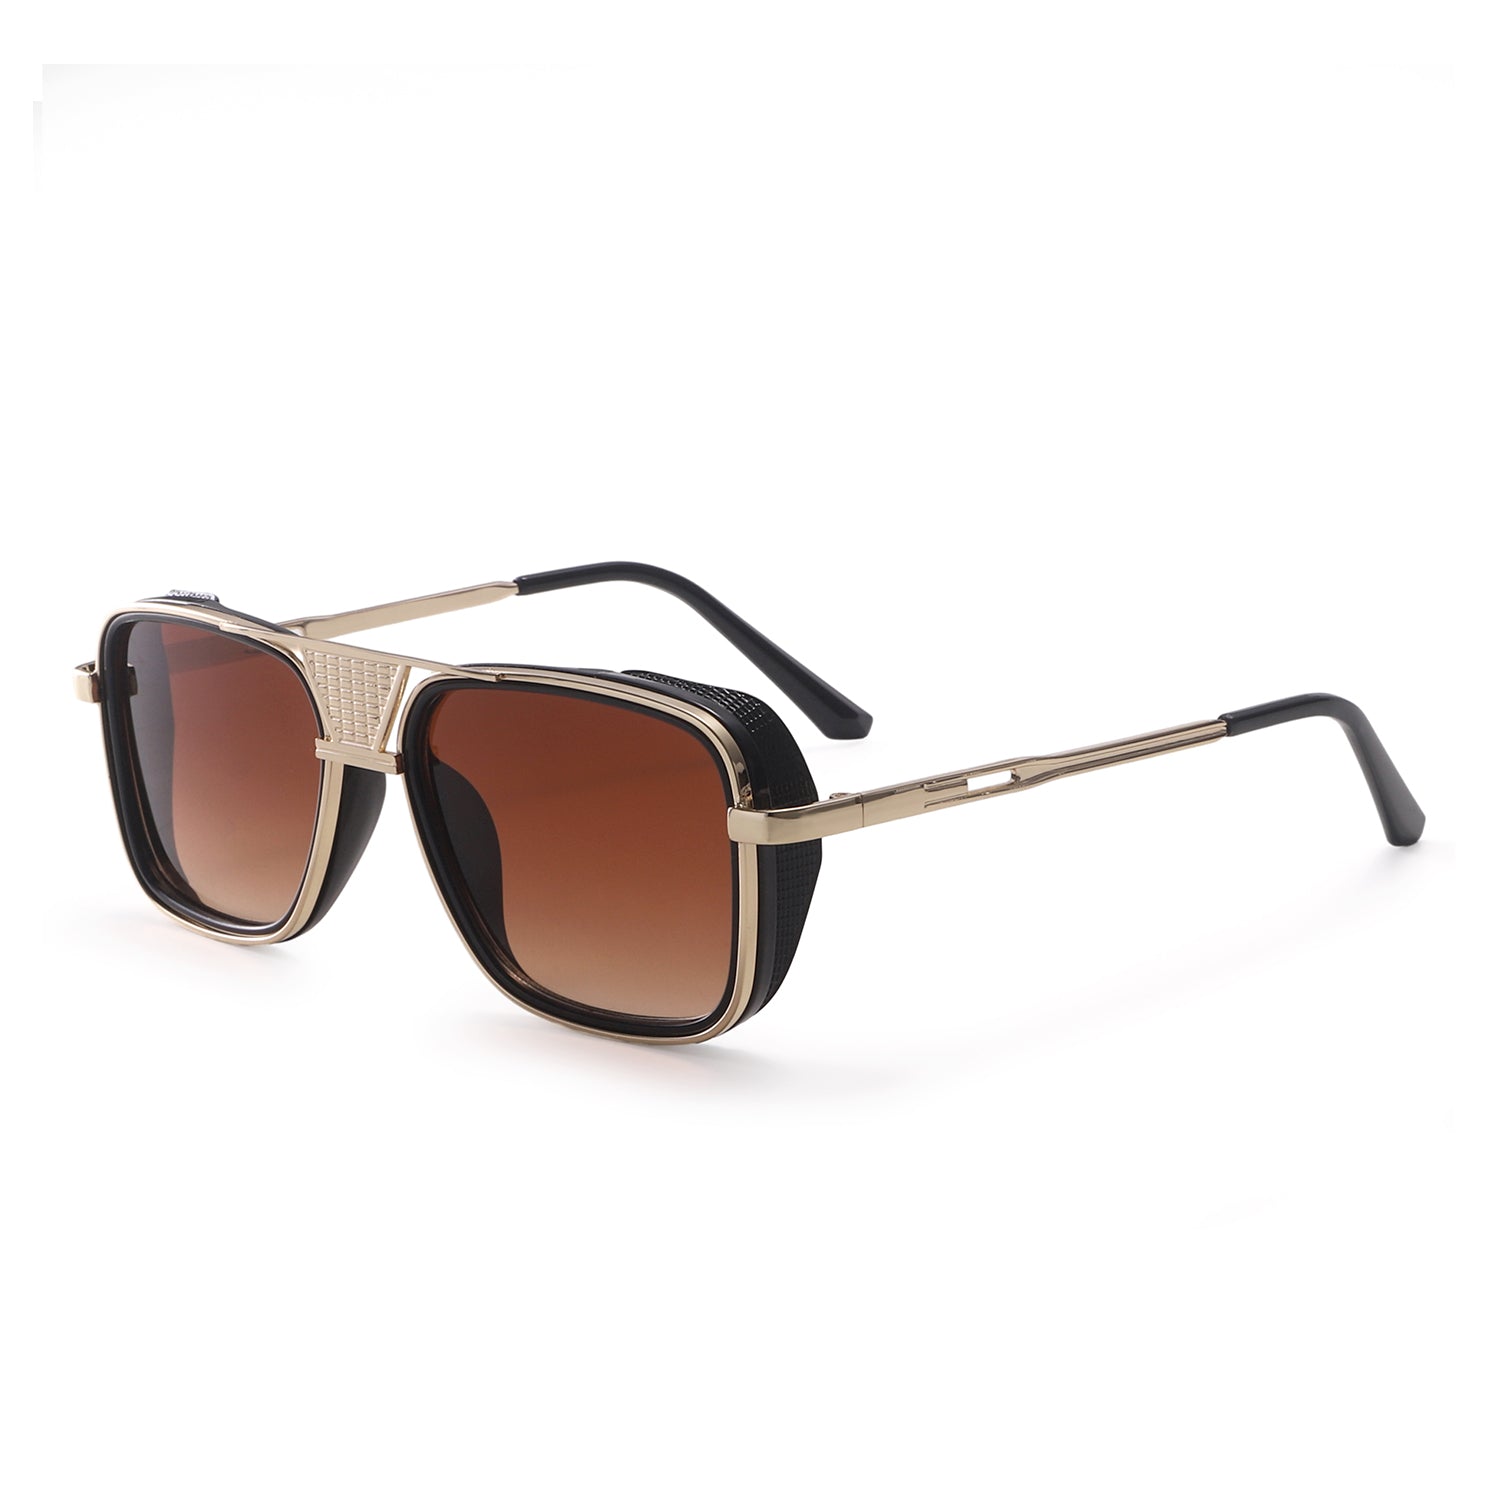 Aviator Black Sunglasses For Men